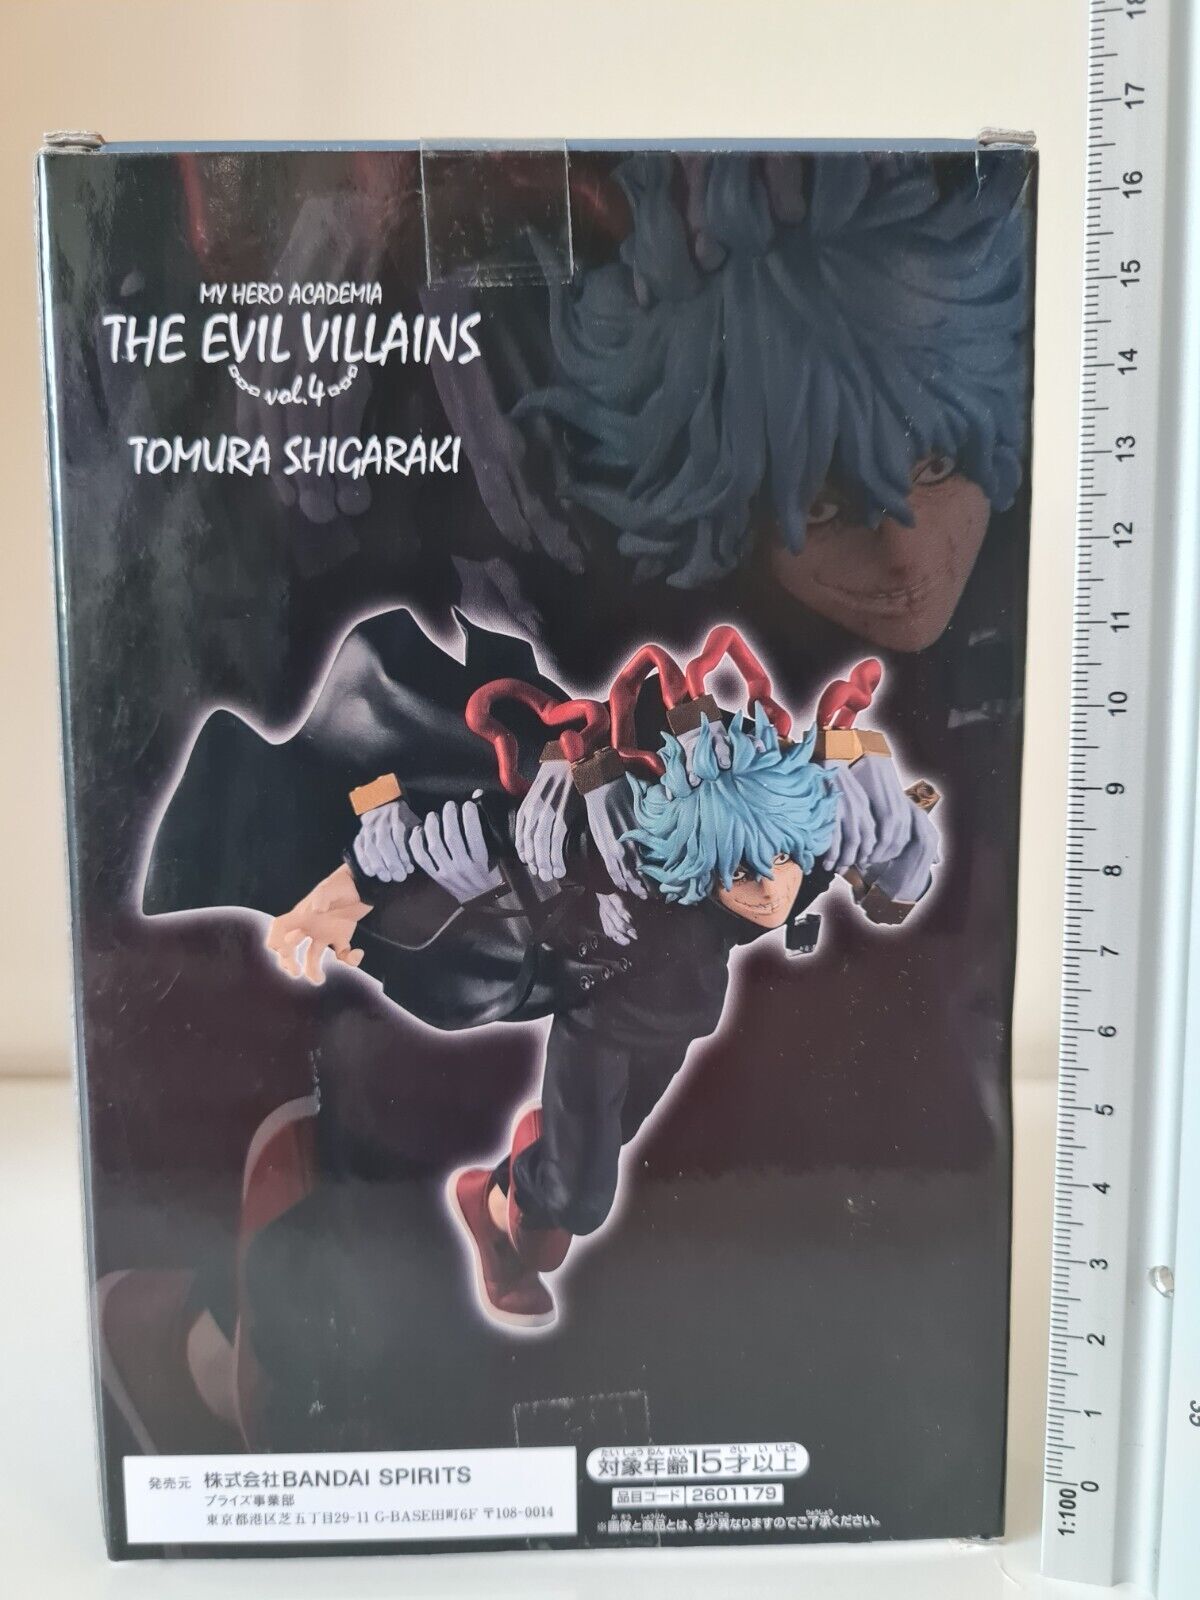 My Hero Academia: The Evil Villains Vol. 4: Tomura Shigaraki